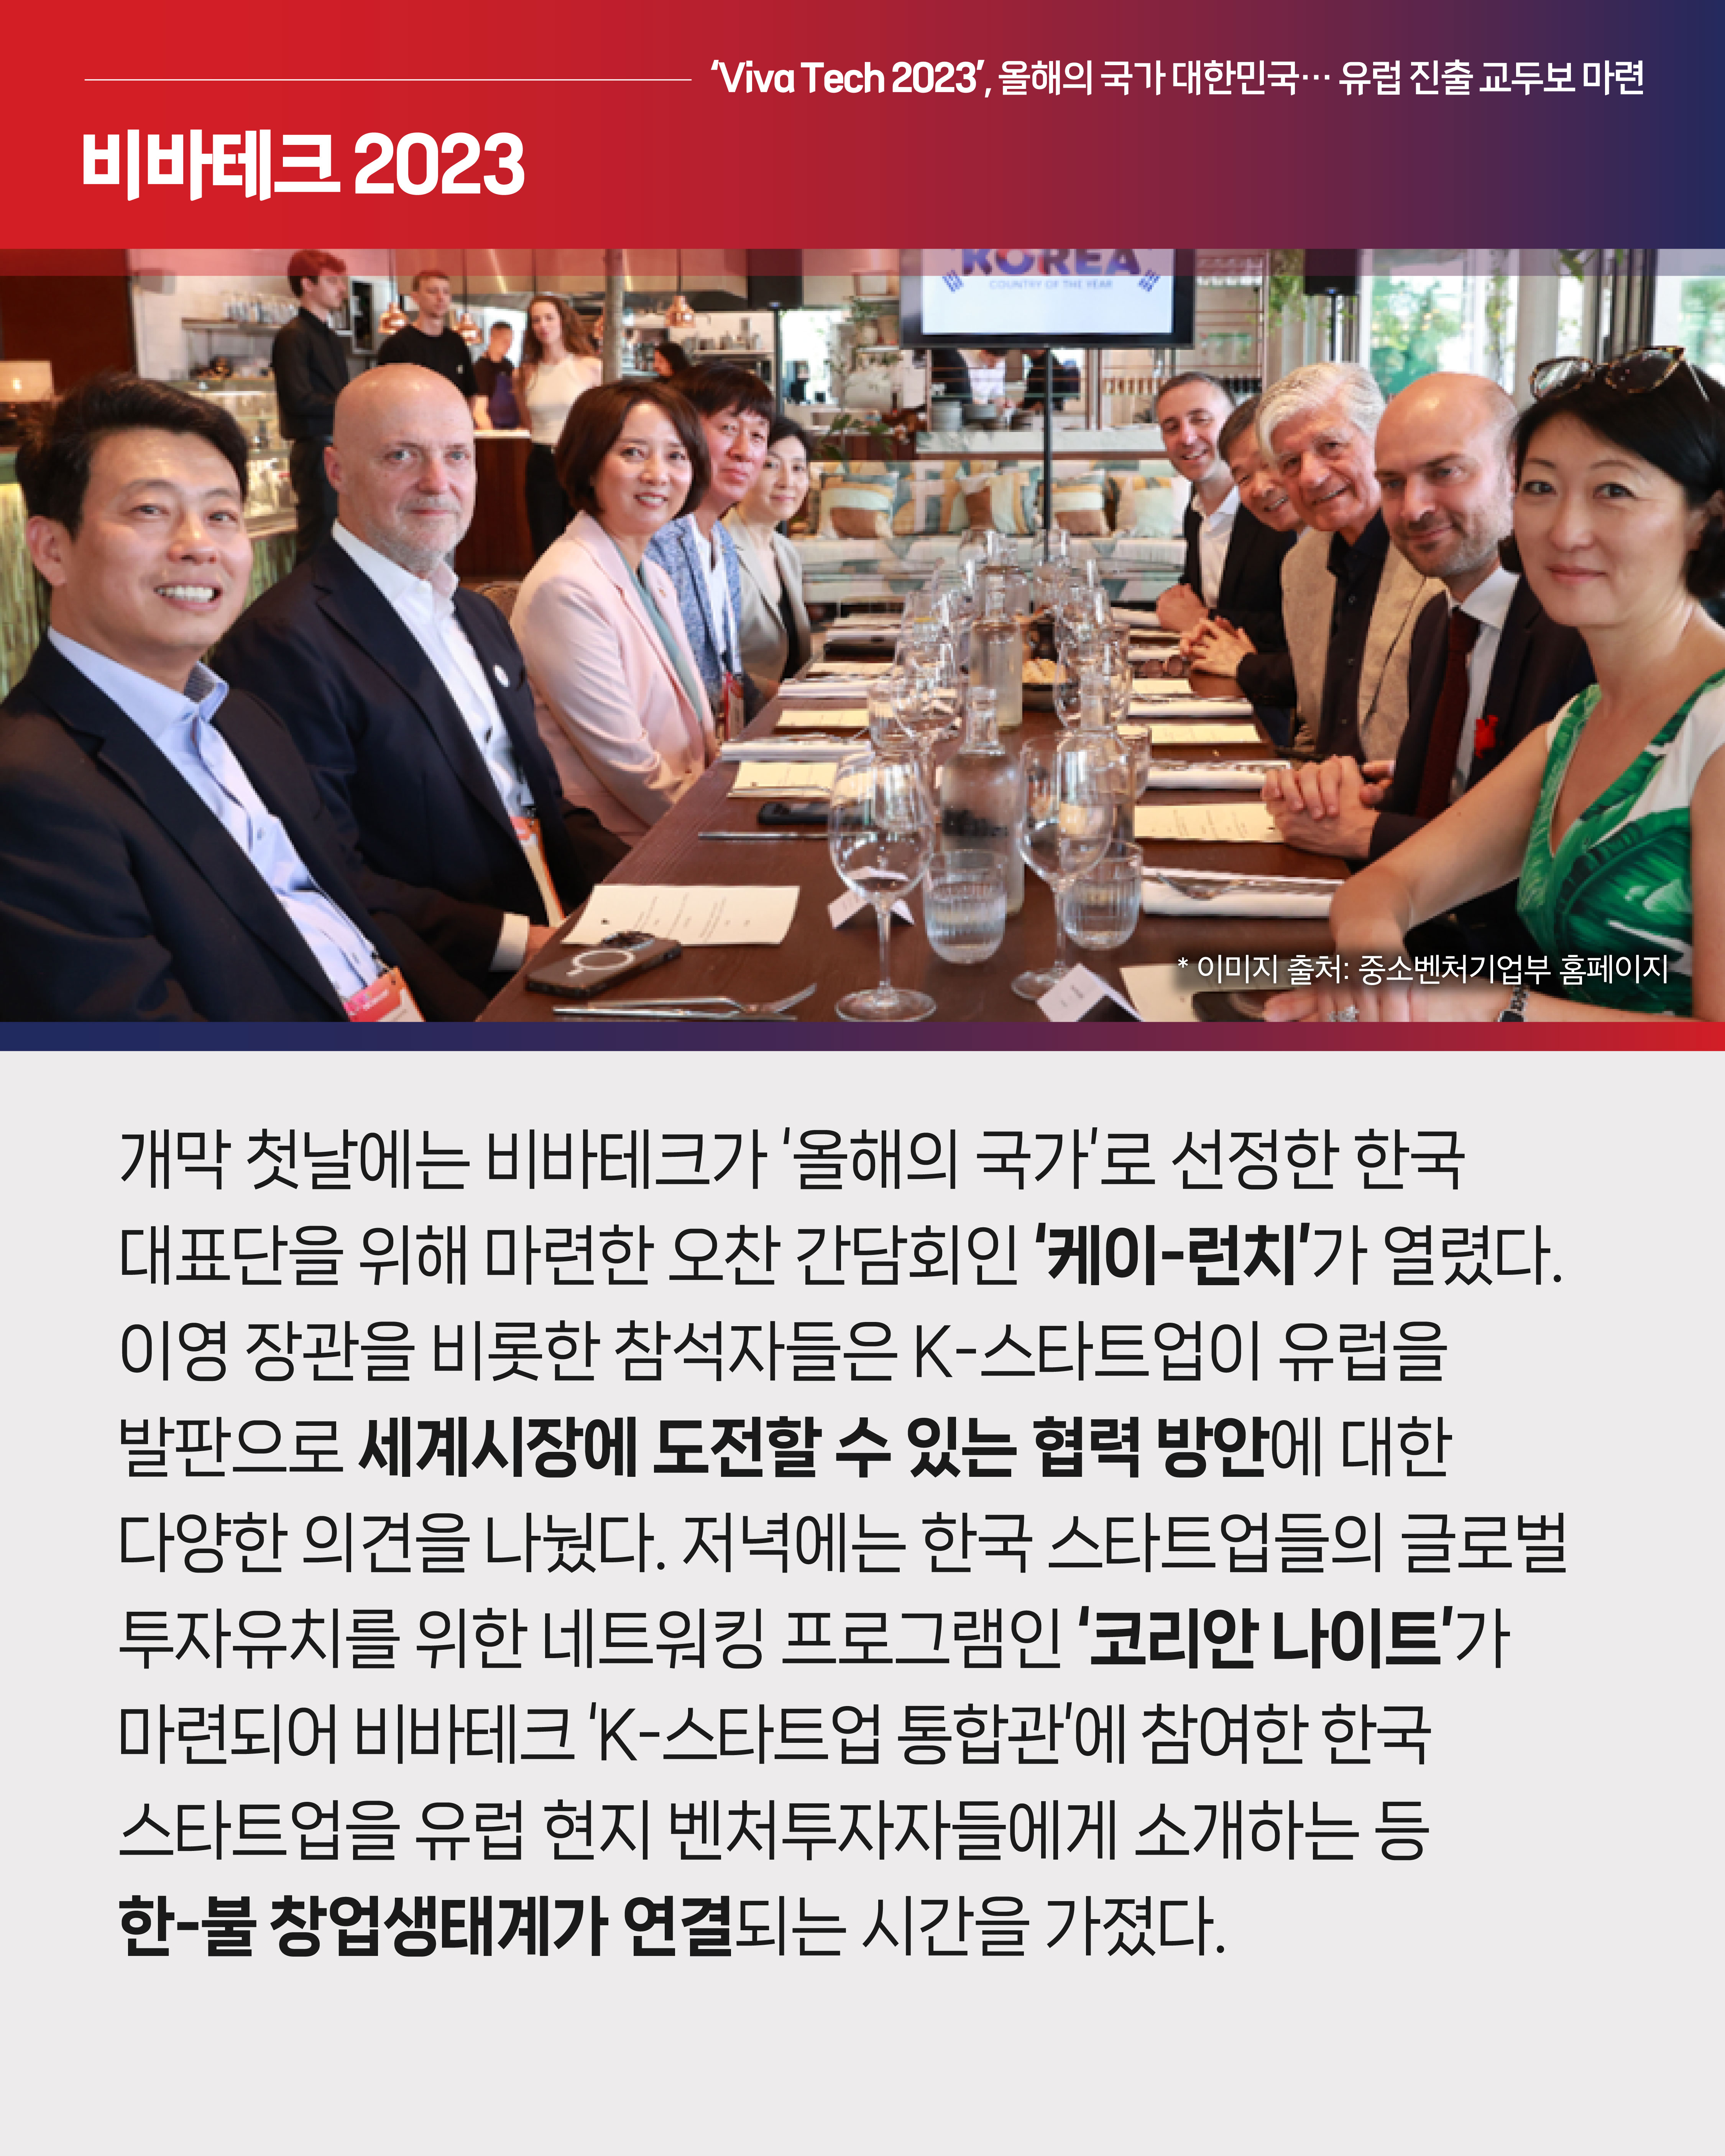 개막 첫날에는 비바테크가 ‘올해의 국가’로 선정한 한국 대표단을 위해 마련한 오찬 간담회인 ‘케이-런치’가 열렸다. 이영 장관을 비롯한 참석자들은 K-스타트업이 유럽을 발판으로 세계시장에 도전할 수 있는 협력 방안에 대한 다양한 의견을 나눴다. 저녁에는 한국 스타트업들의 글로벌 투자유치를 위한 네트워킹 프로그램인 ‘코리안 나이트’가 마련되어 비바테크 ‘K-스타트업 통합관’에 참여한 한국 스타트업을 유럽 현지 벤처투자자들에게 소개하는 등 한-불 창업생태계가 연결되는 시간을 가졌다.  
